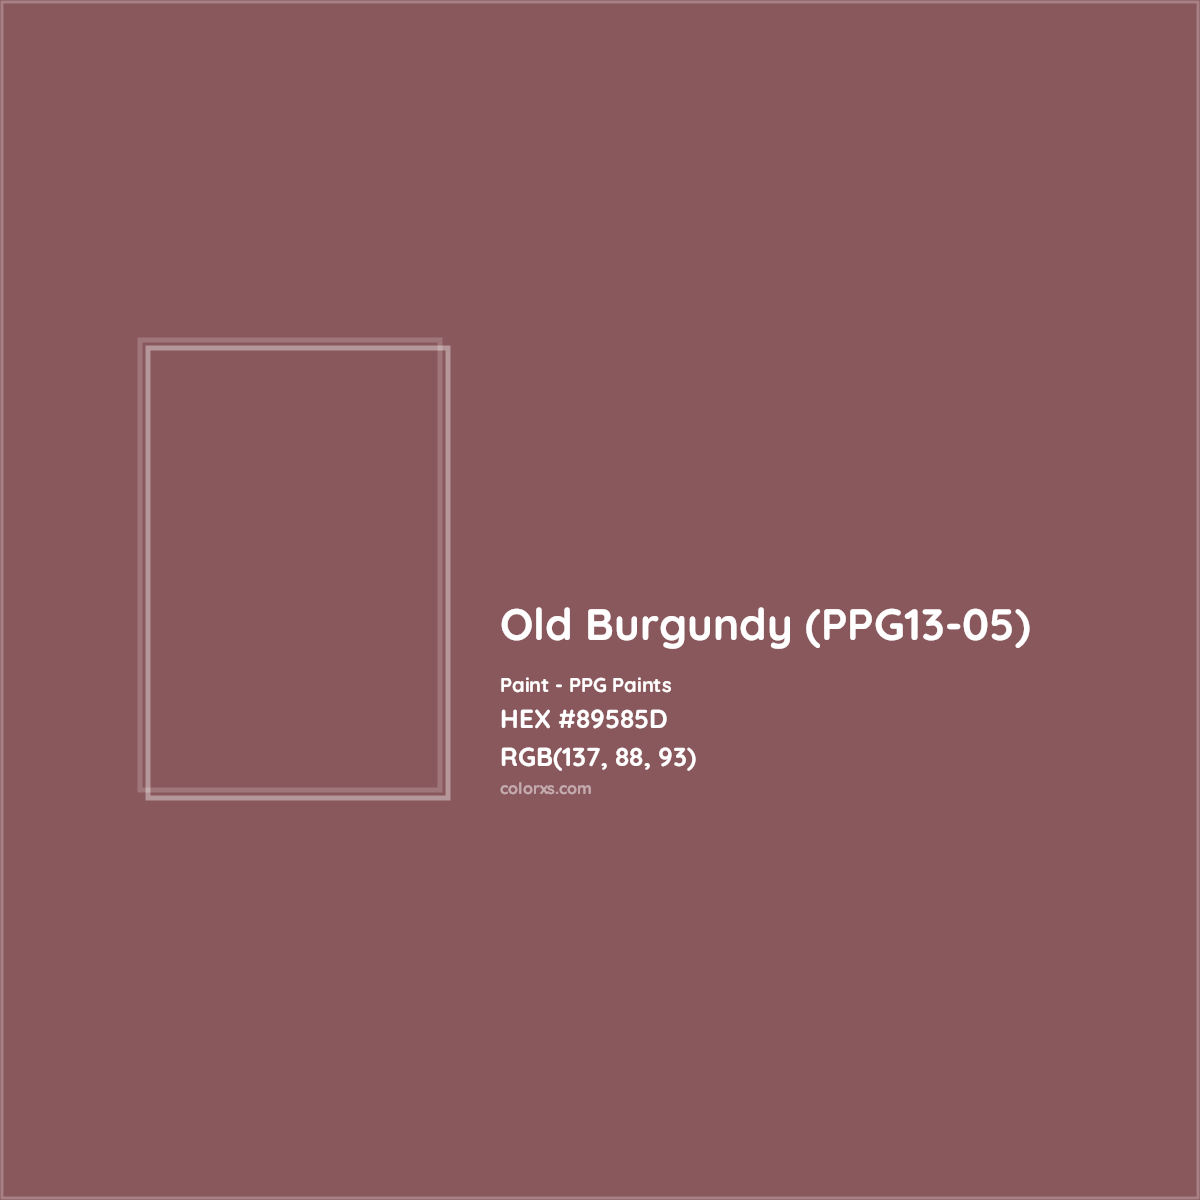 HEX #89585D Old Burgundy (PPG13-05) Paint PPG Paints - Color Code